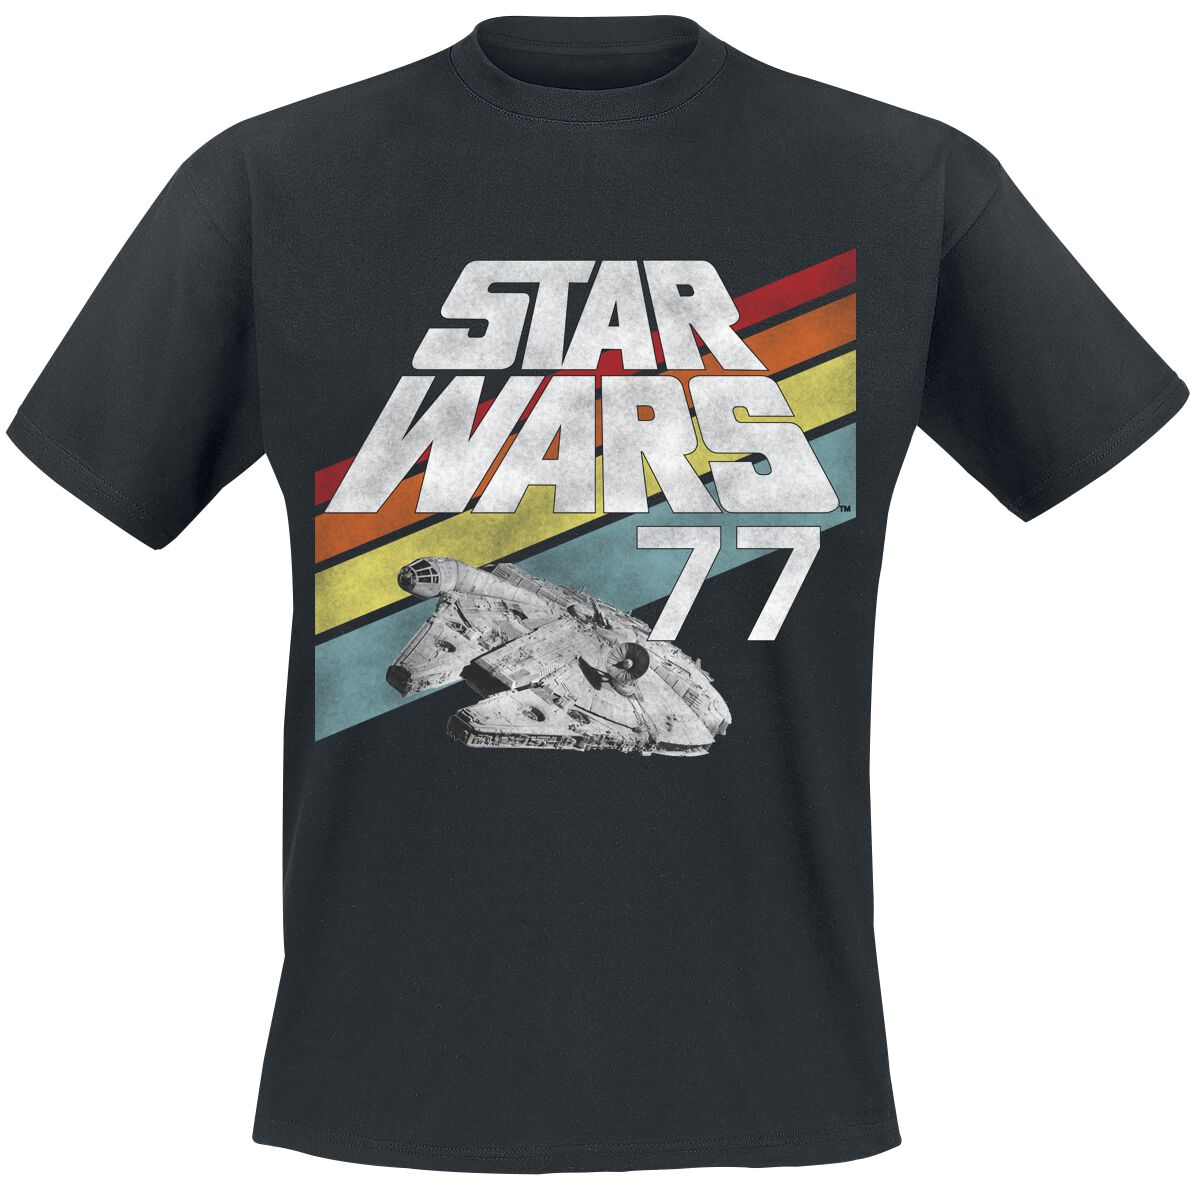 Star Wars T-Shirt - Star Wars - 77 - S bis XXL - für Männer - Größe XXL - schwarz  - EMP exklusives Merchandise! von Star Wars